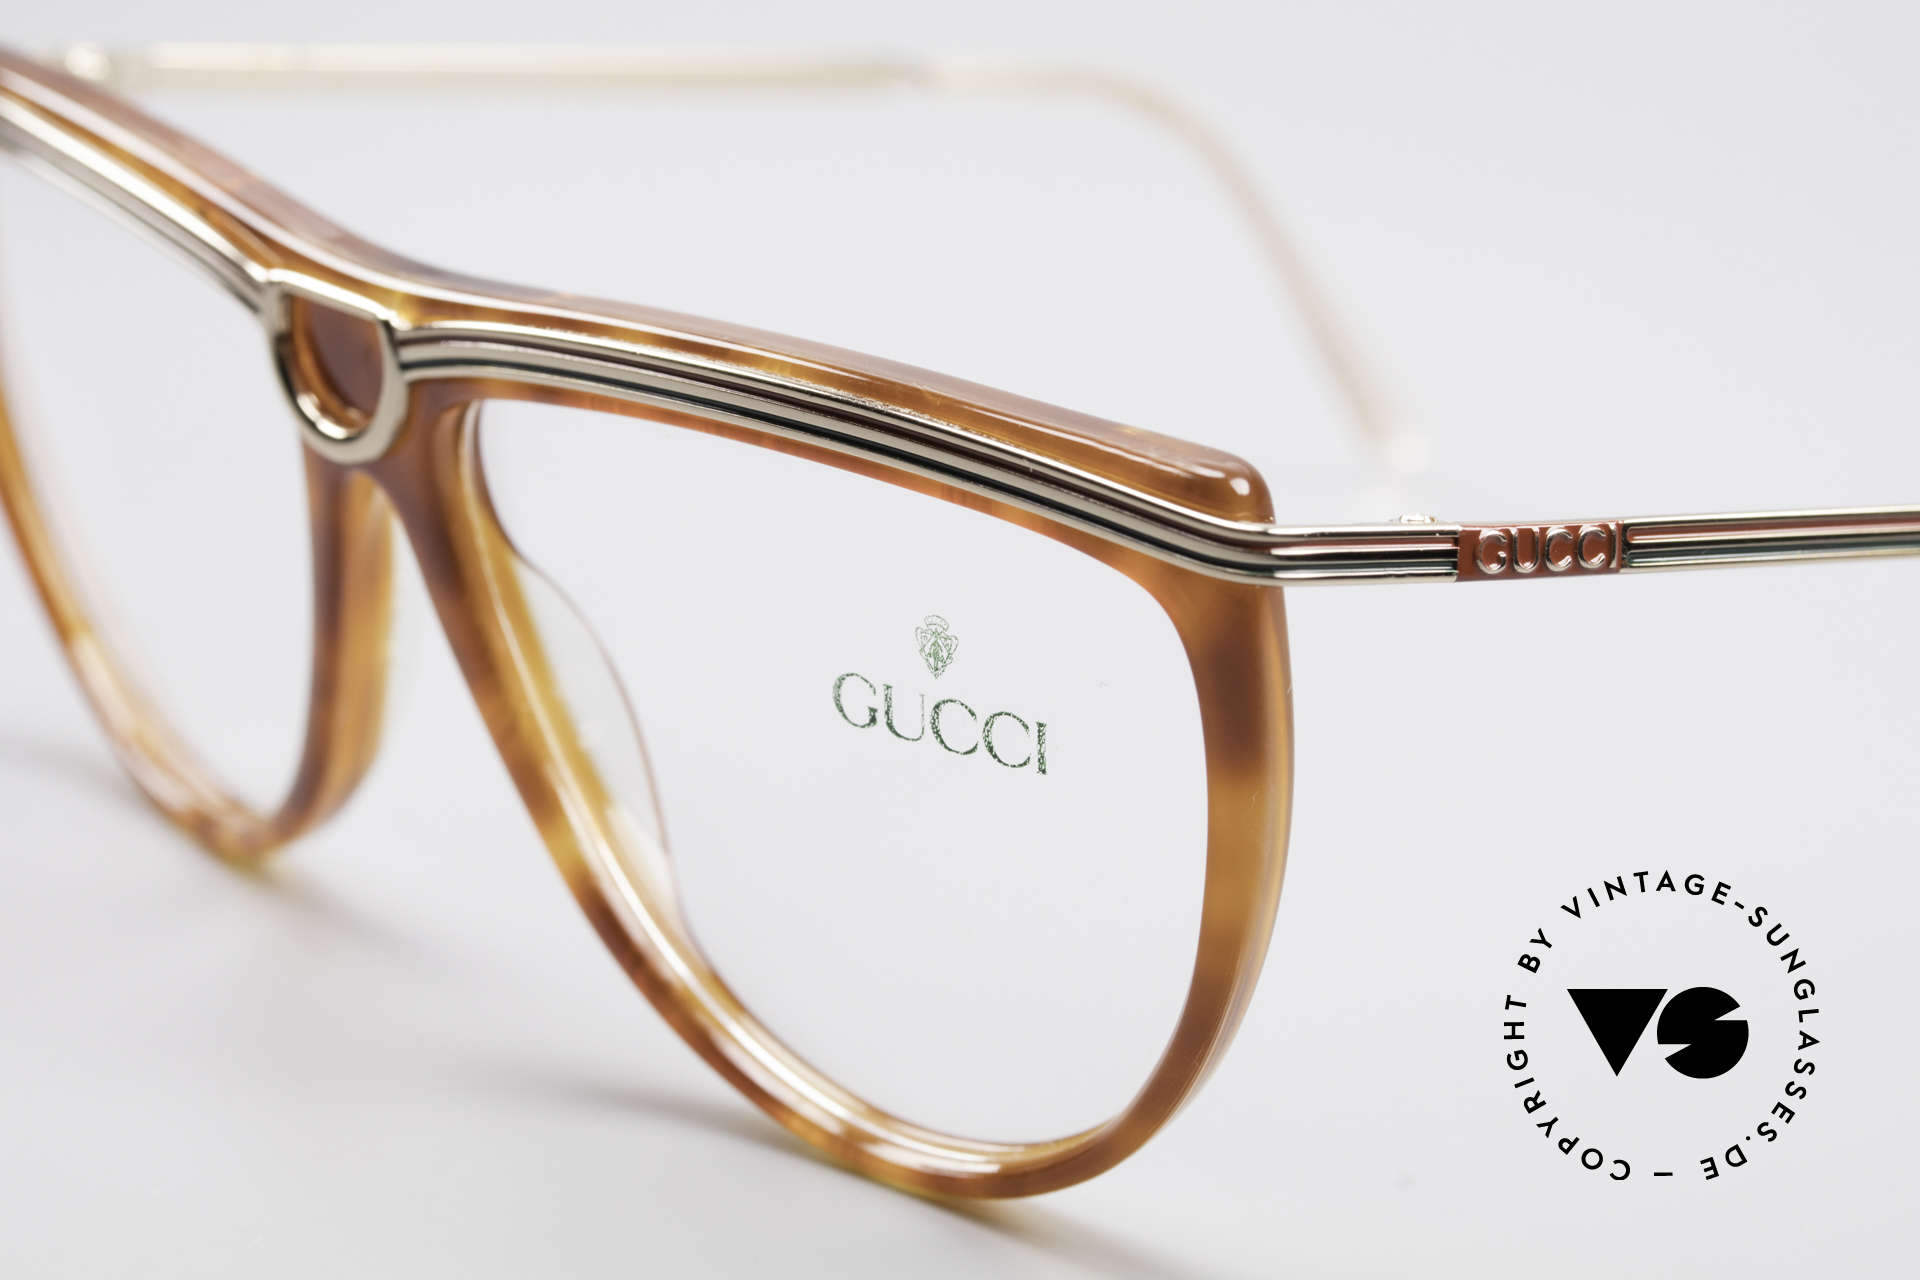 Gucci 2303 Ladies Eyeglasses 80's, unworn (like all our rare vintage ladies eyeglasses), Made for Women